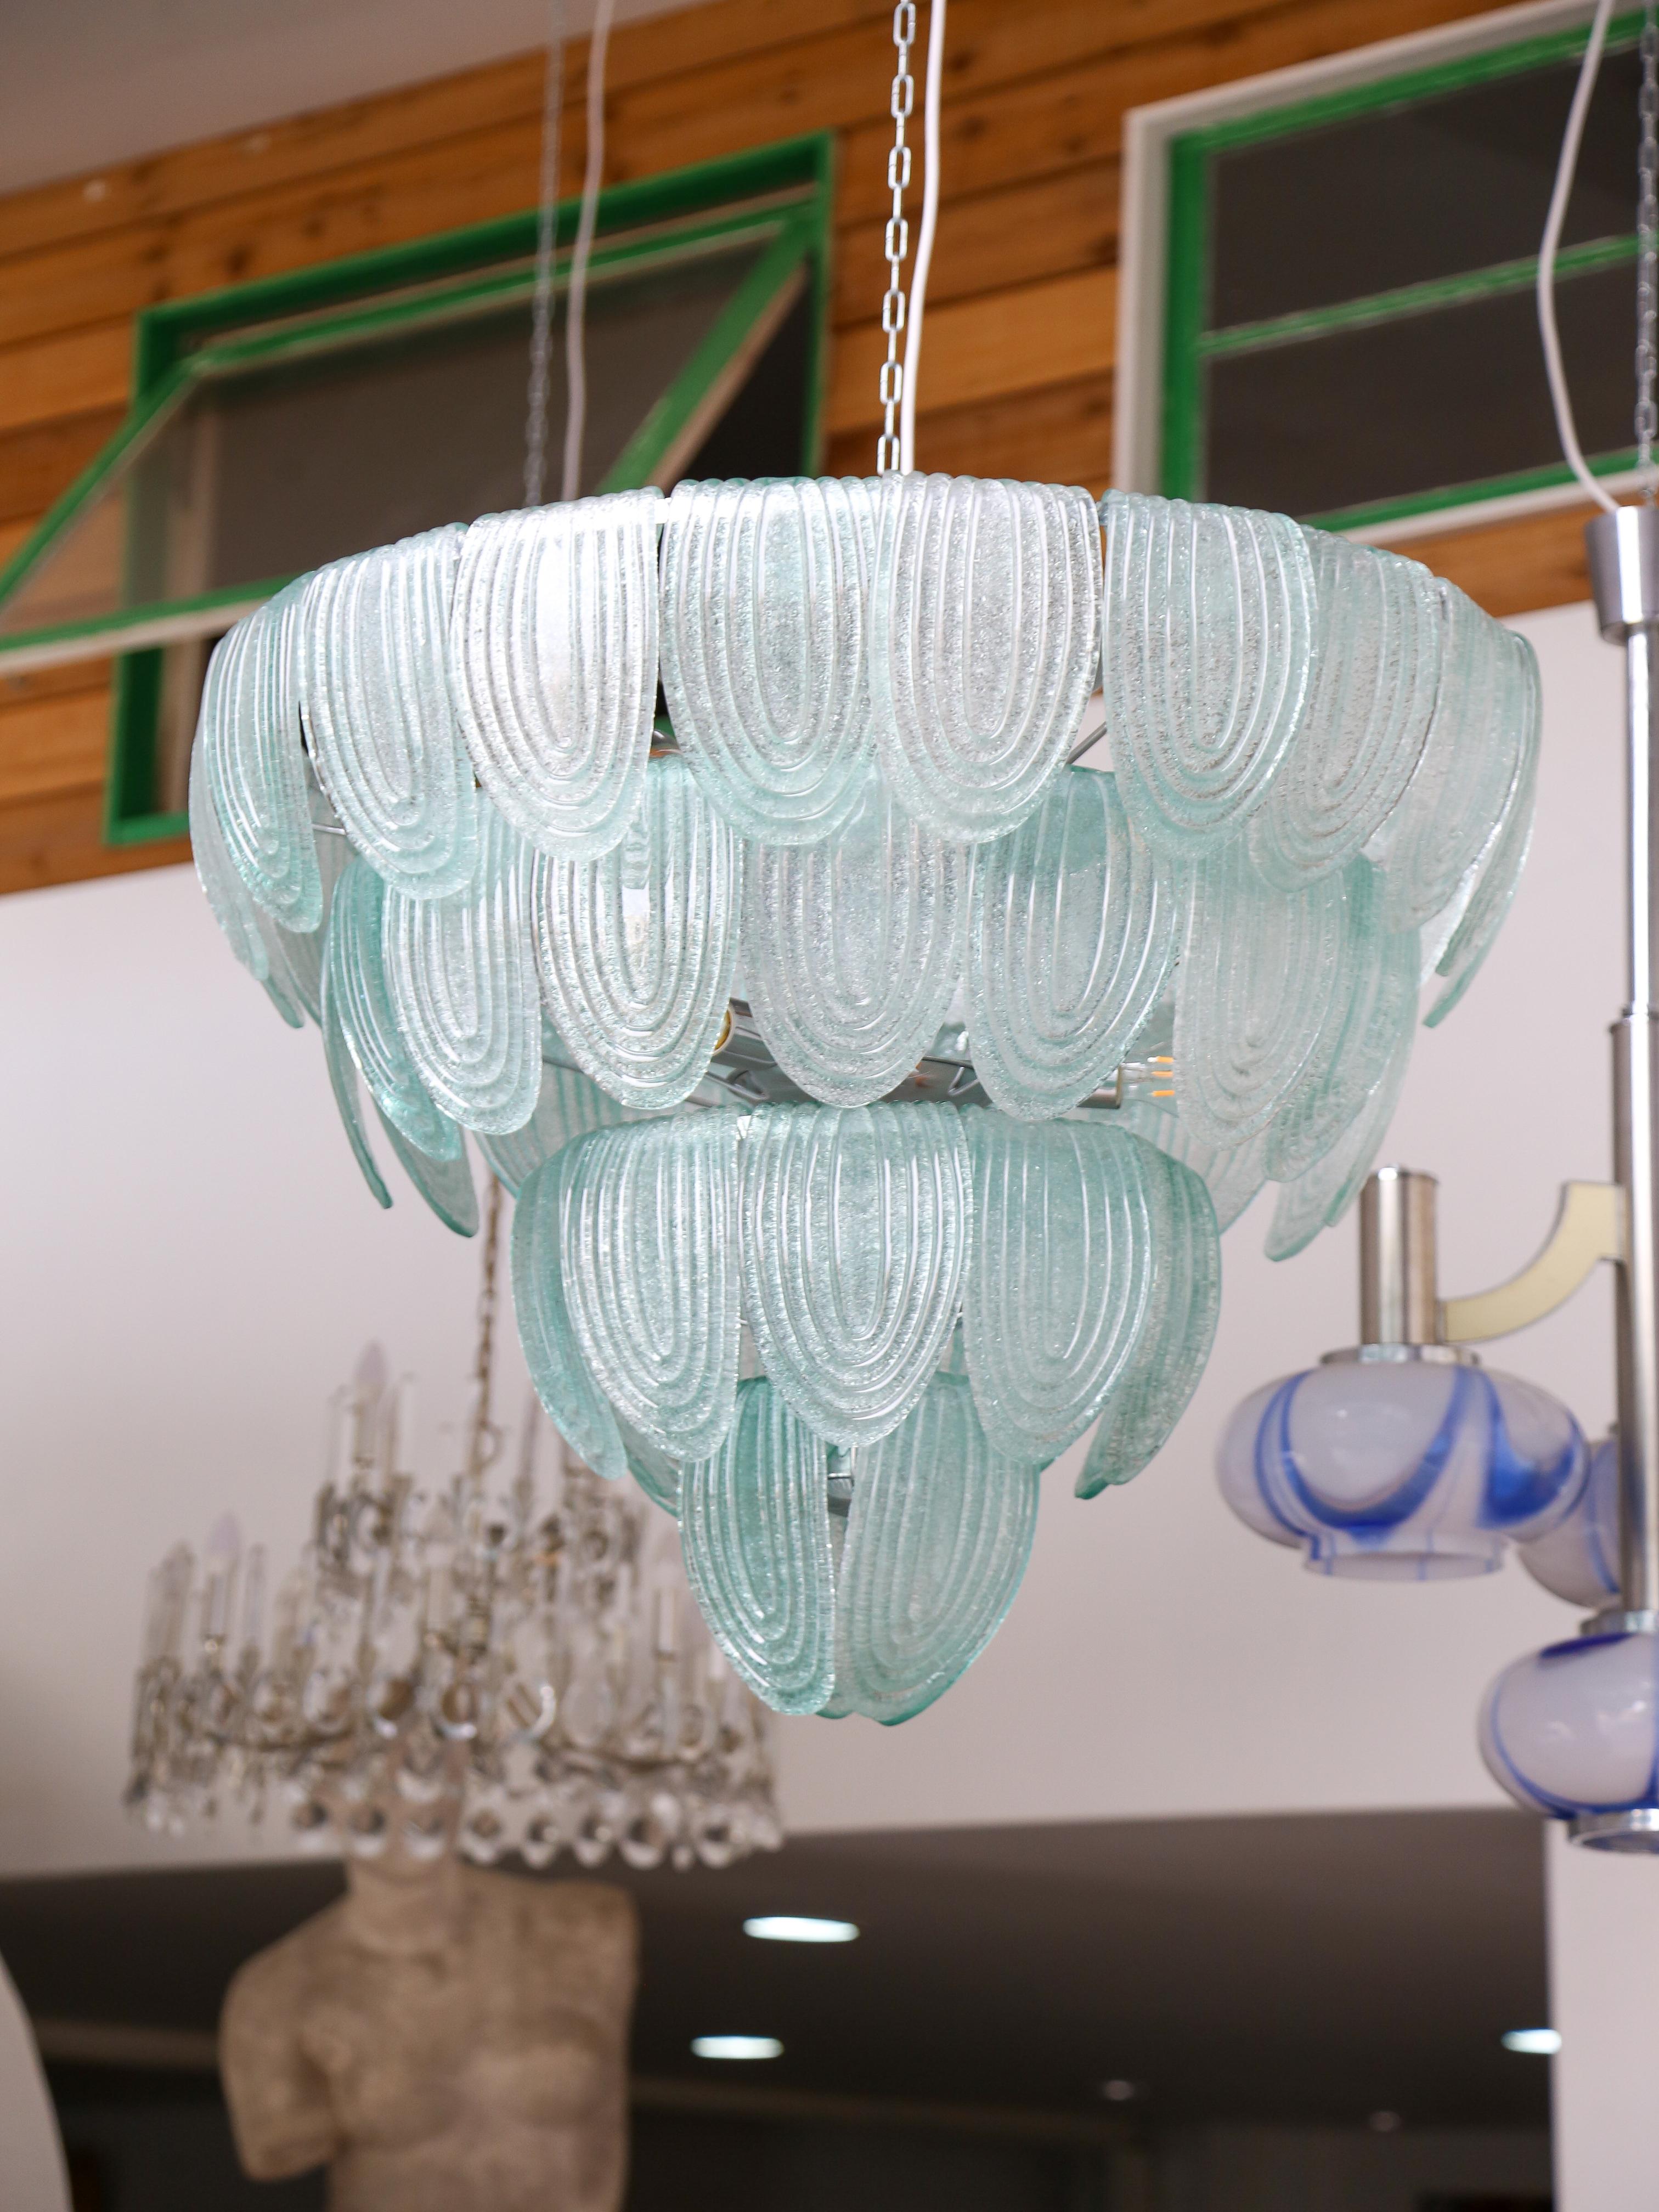 Kronleuchter aus grünem Murano-Glas mit einem Metallrahmen mit vier Ebenen von Sätteln und elf Glühbirnen im Inneren. (Die Gesamtzahl der Glassättel beträgt 54)
Dieser Kronleuchter ist nicht nur eine luxuriöse und elegante Leuchte, sondern auch ein